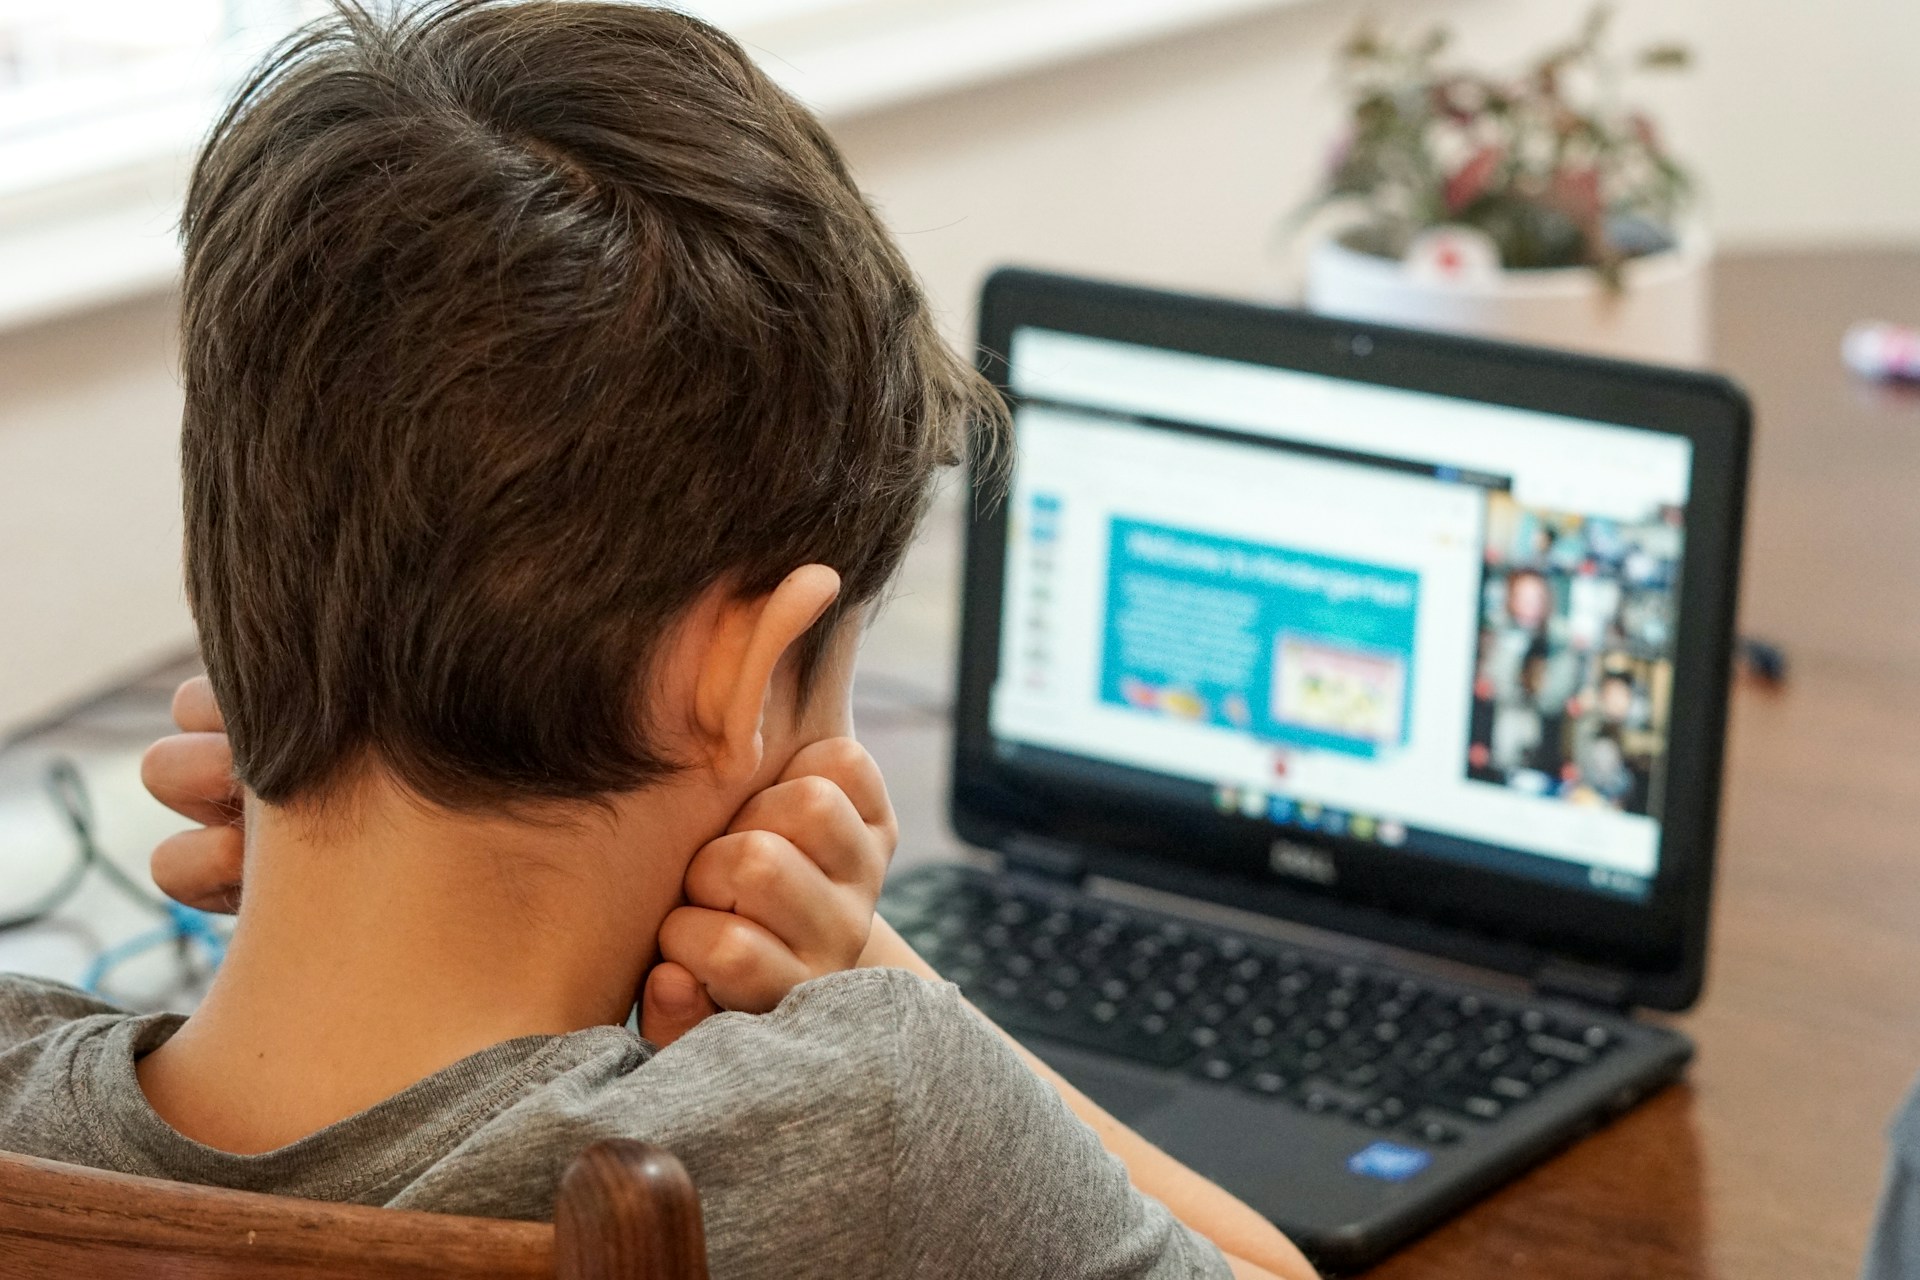 ΠΟΥ: Σχεδόν 1 στα 6 παιδιά έχουν πέσει θύματα παρενόχλησης μέσω διαδικτύου